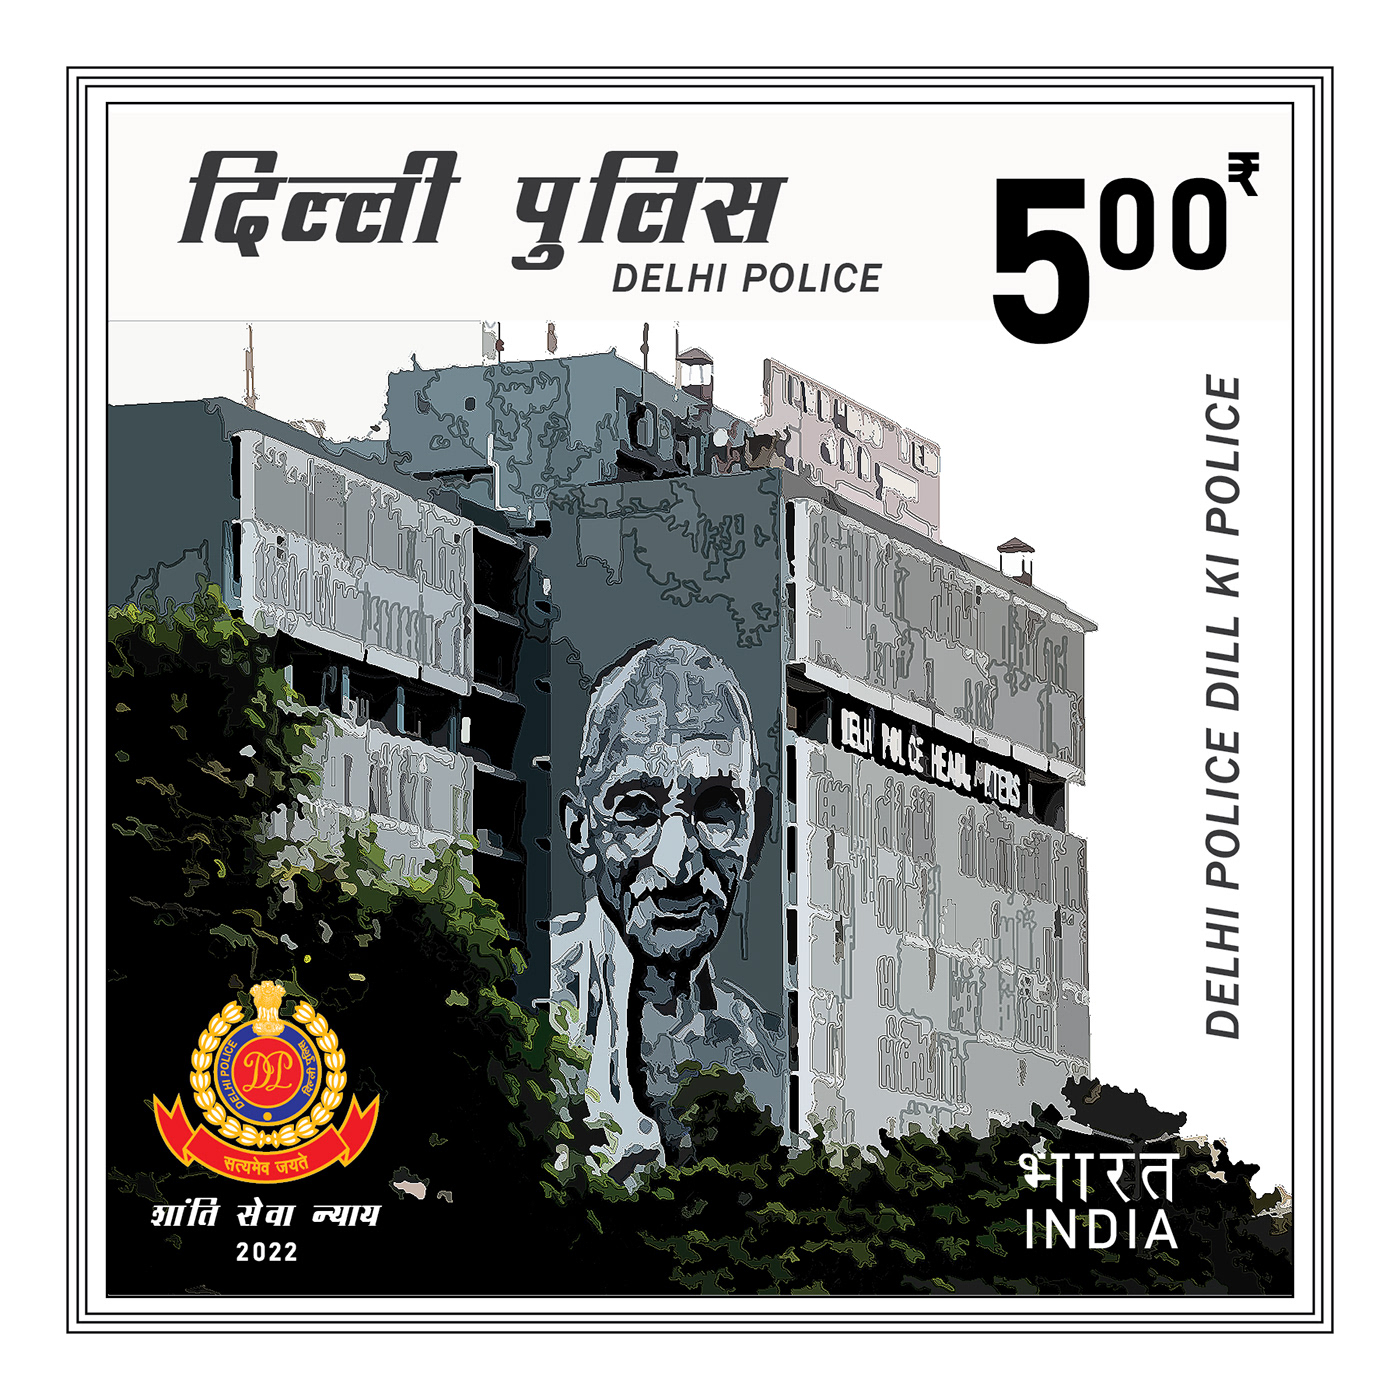 Delhi delhipolice indianpost postoffice poststamp poststamps stamp stampdesign stamps stamps design